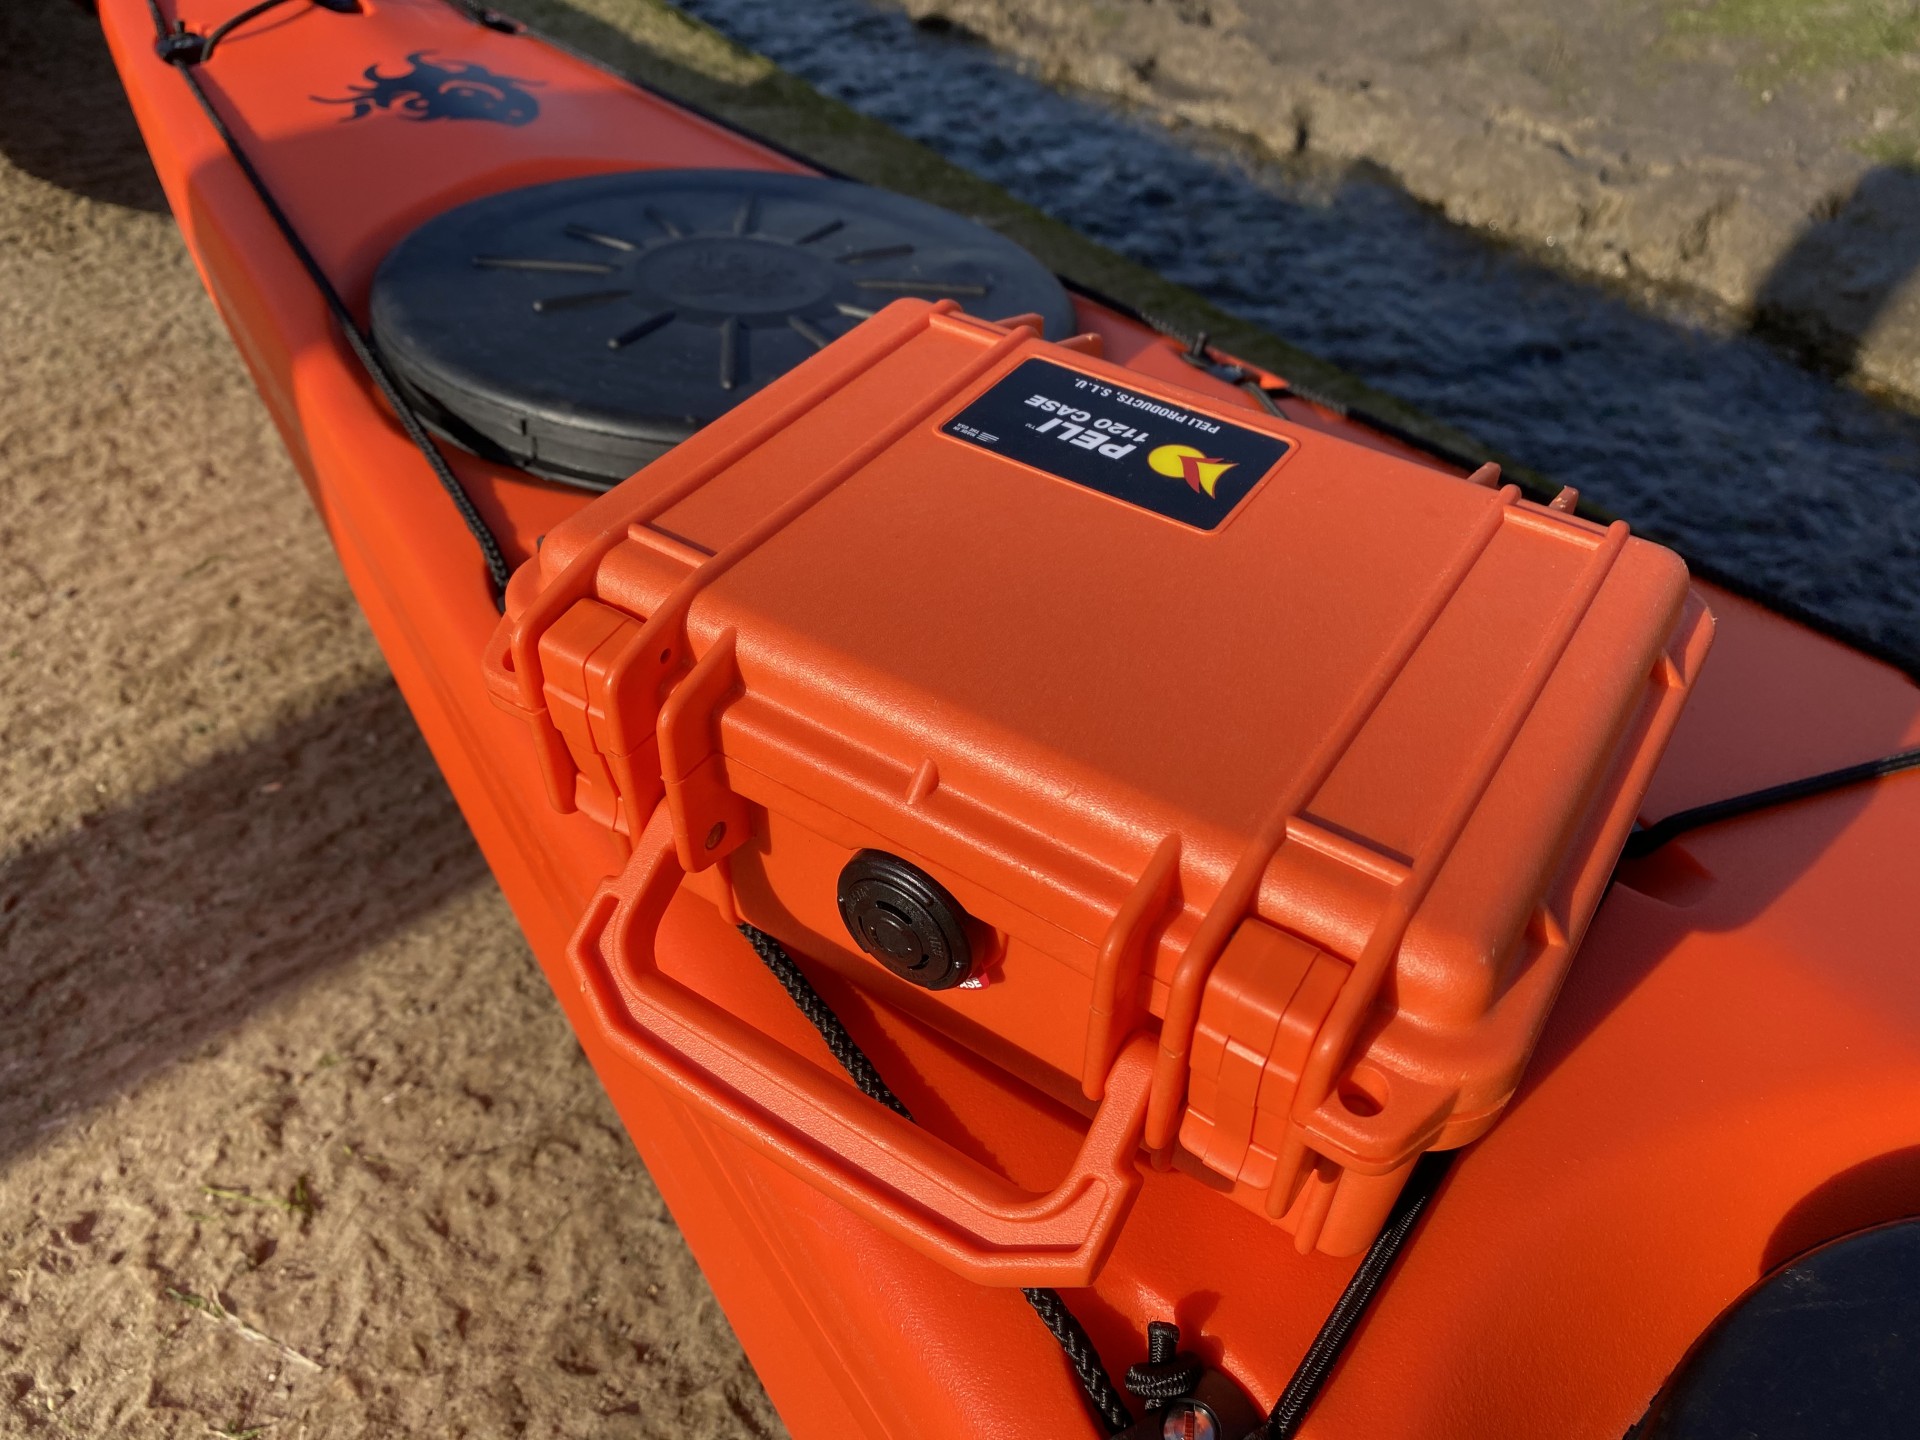 Peli waterproof & rustproof case in orange on a matching sea kayak.